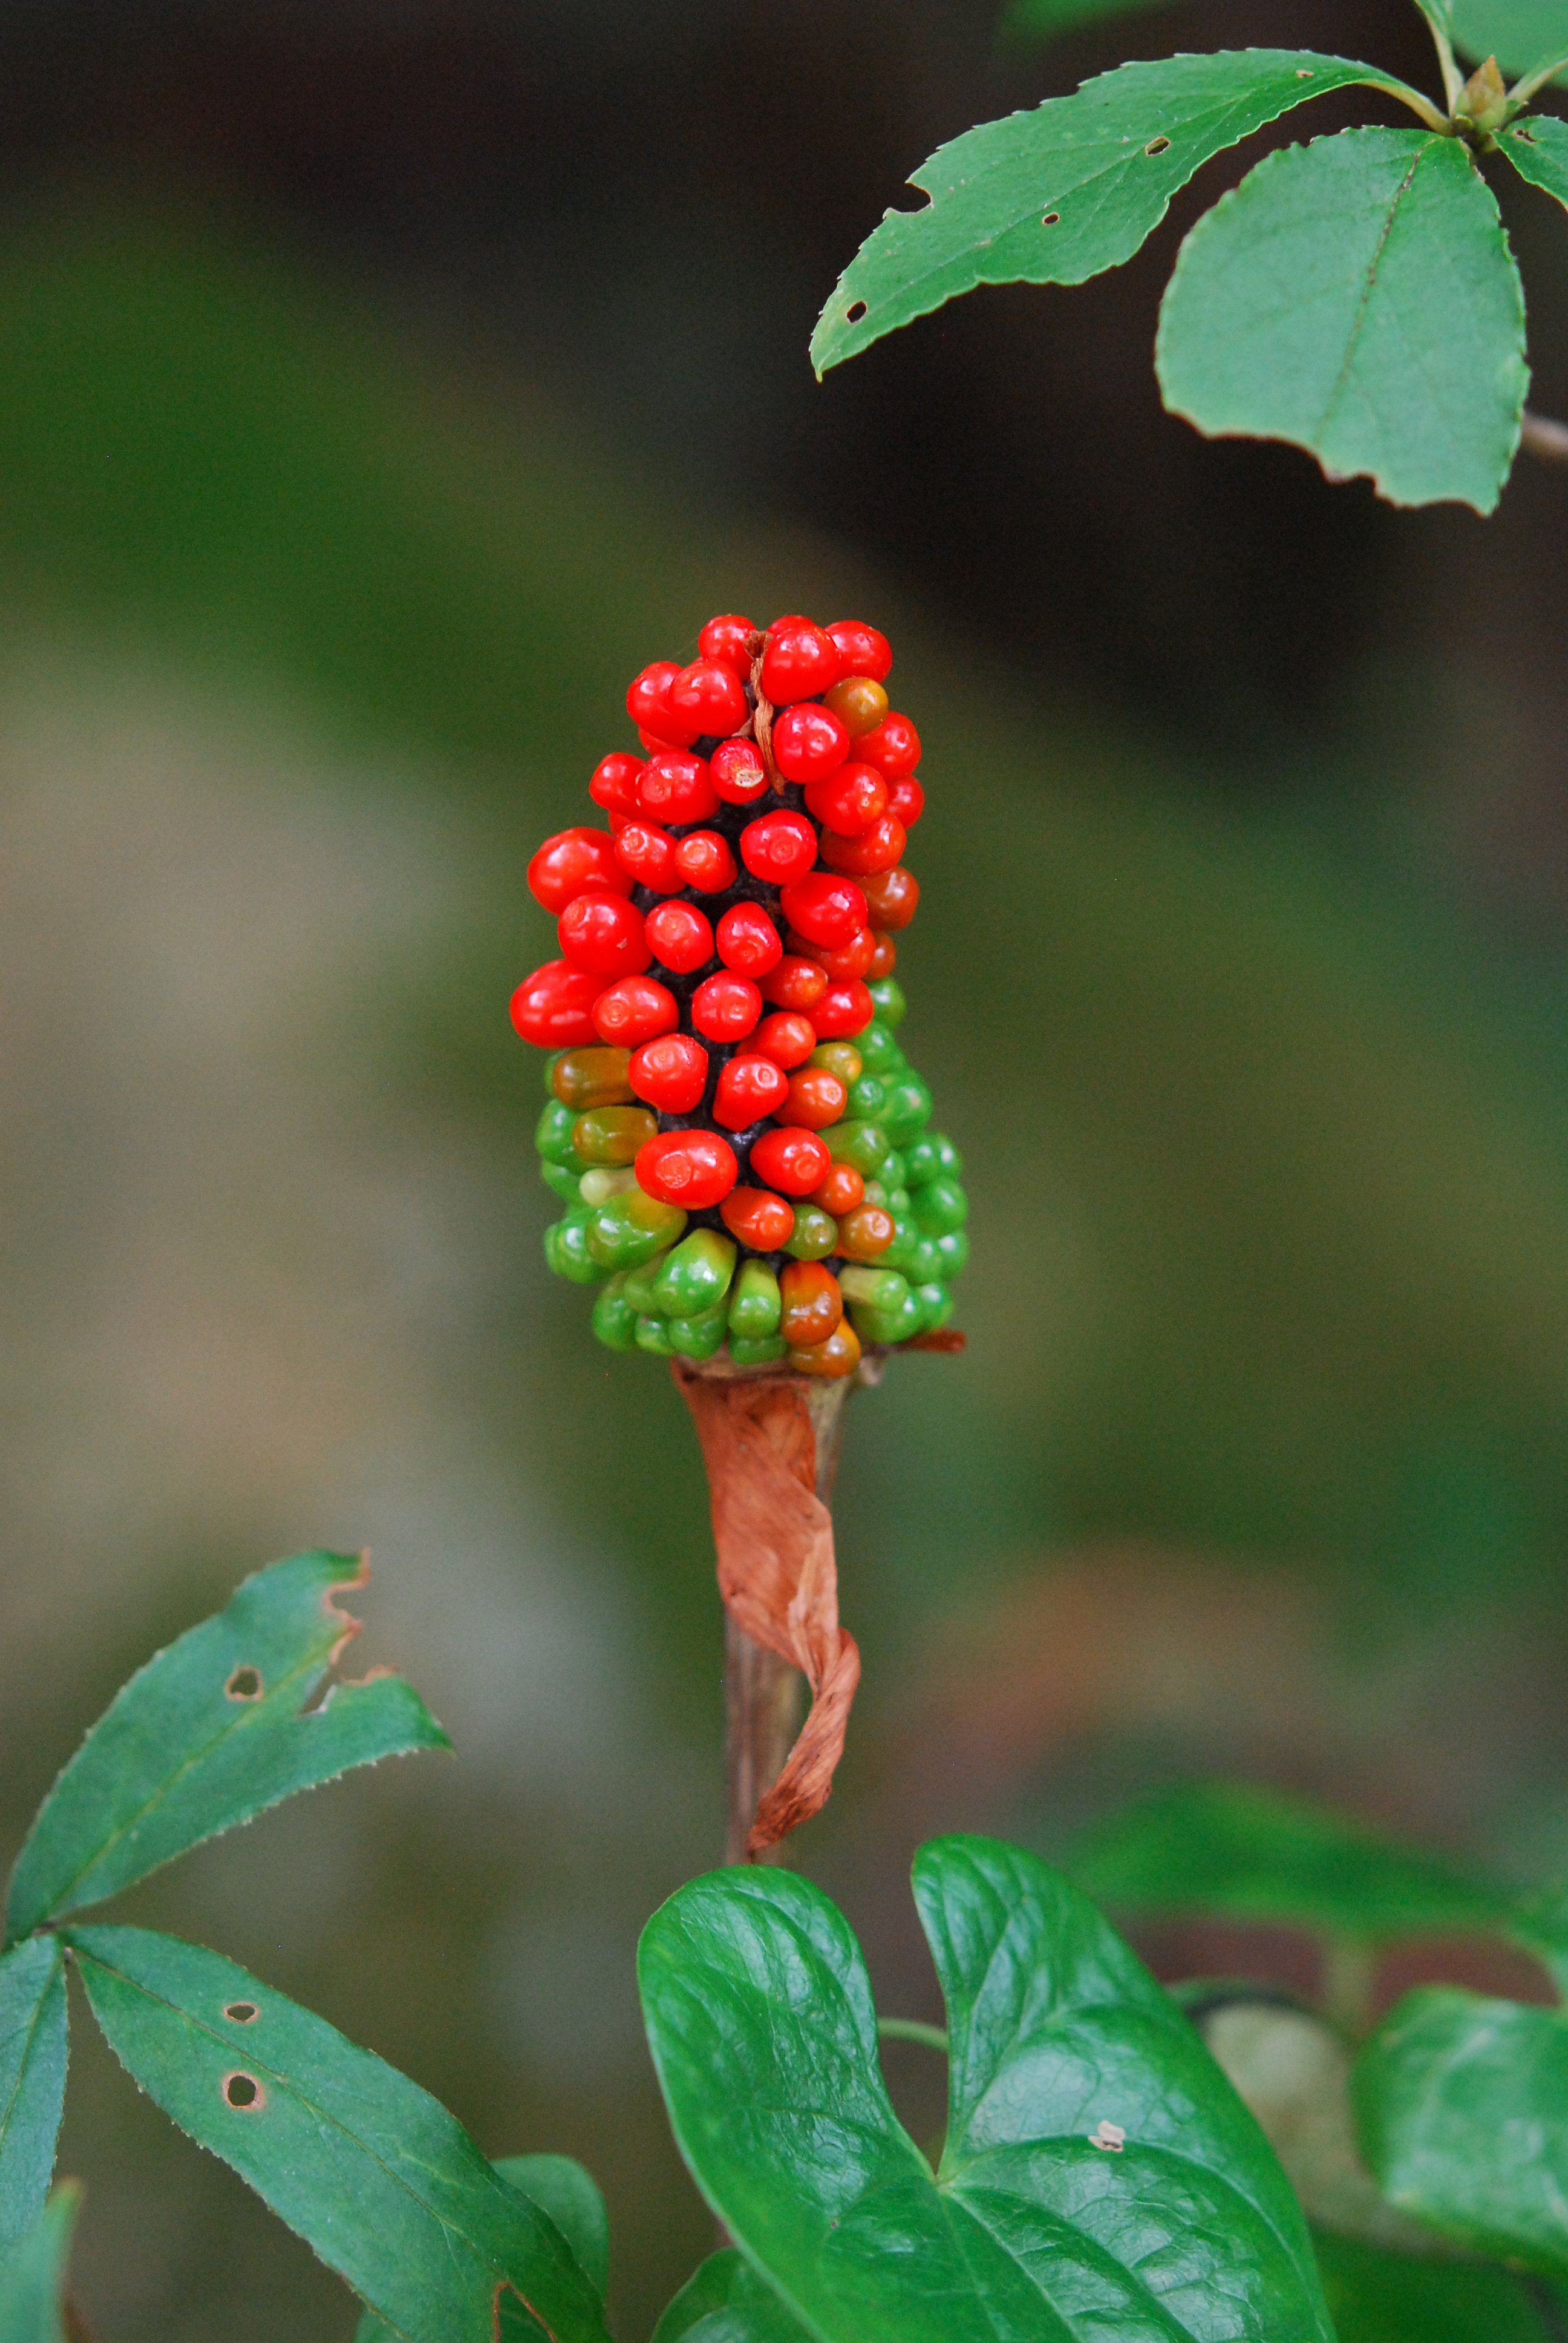 六甲高山植物園 マムシグサの実 鮮やかな色 ちょっと気持ち悪い見た目ですね 緑から赤へ熟していきます 食べれません T Co S53rqundtc Twitter